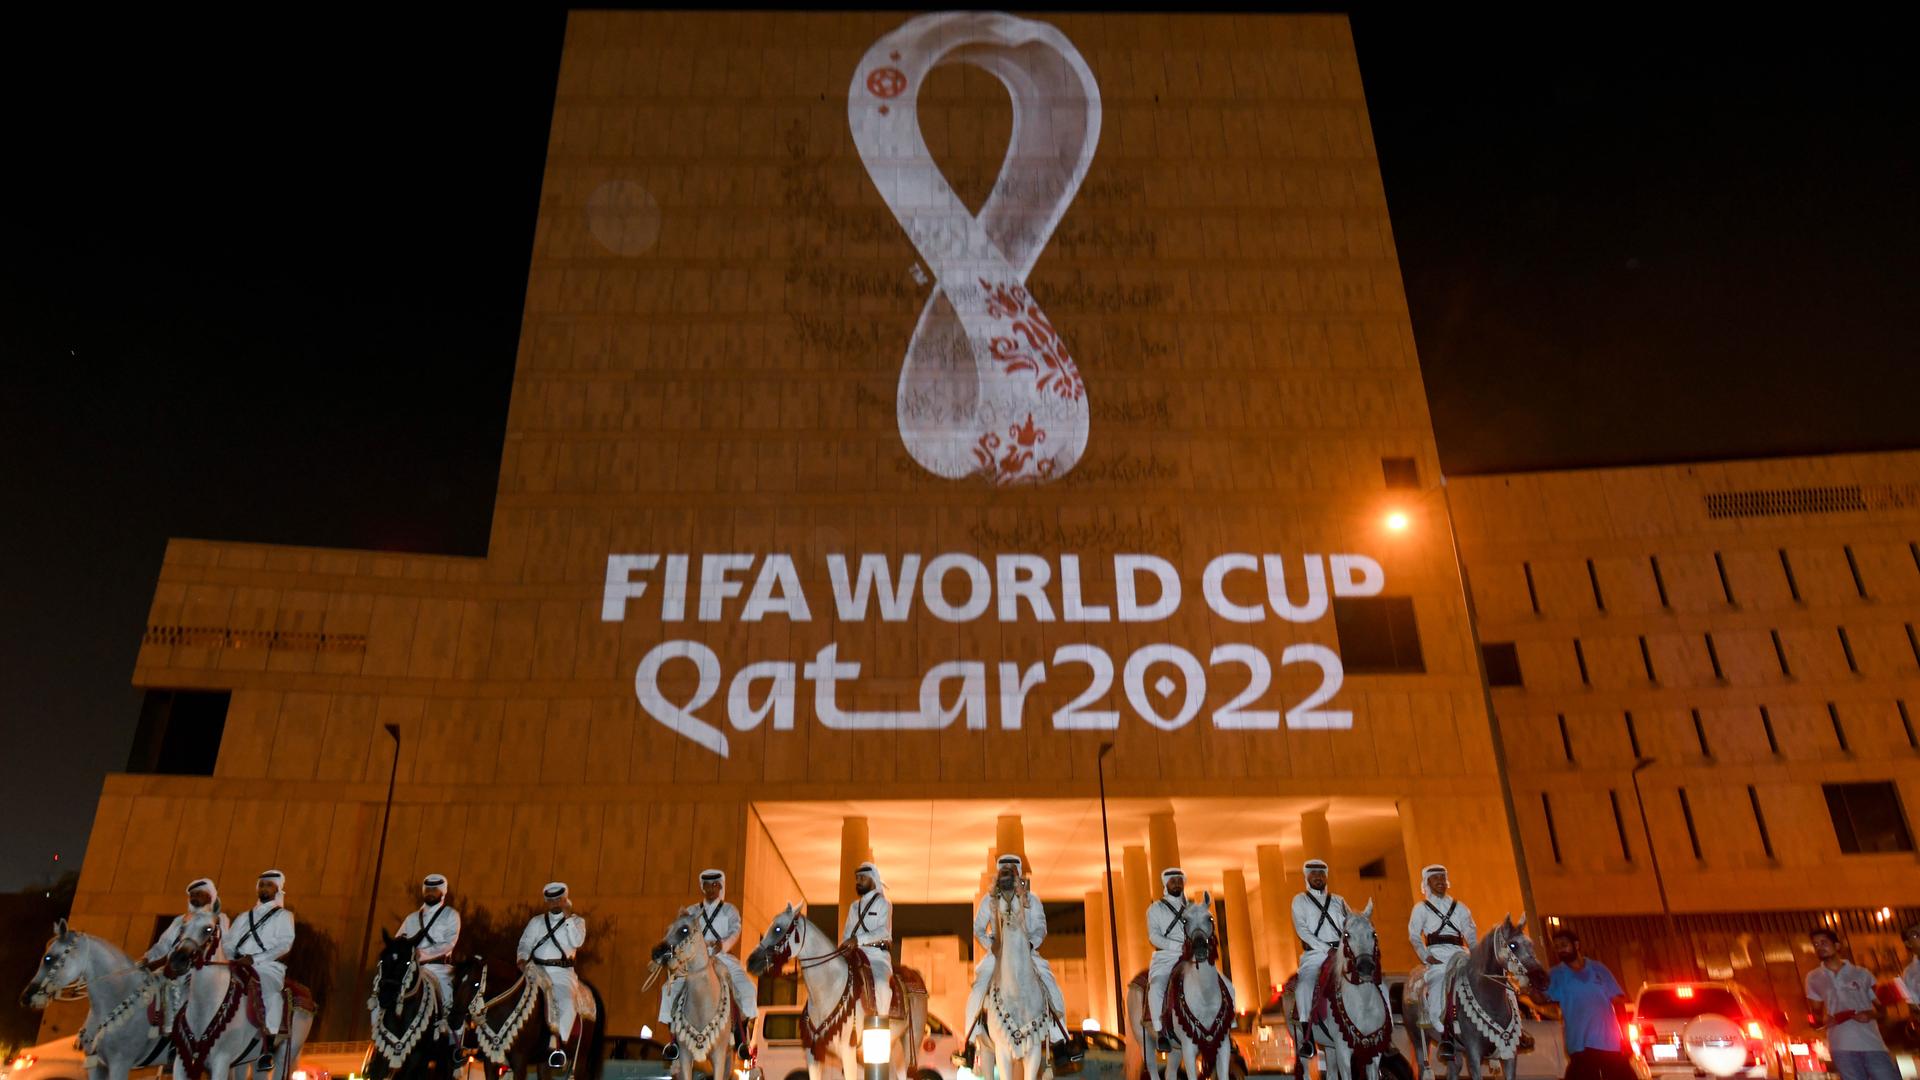 Das Logo von der Fußball-Welt-Meisterschaft 2022 in Katar wird an eine Haus-Wand projiziert.